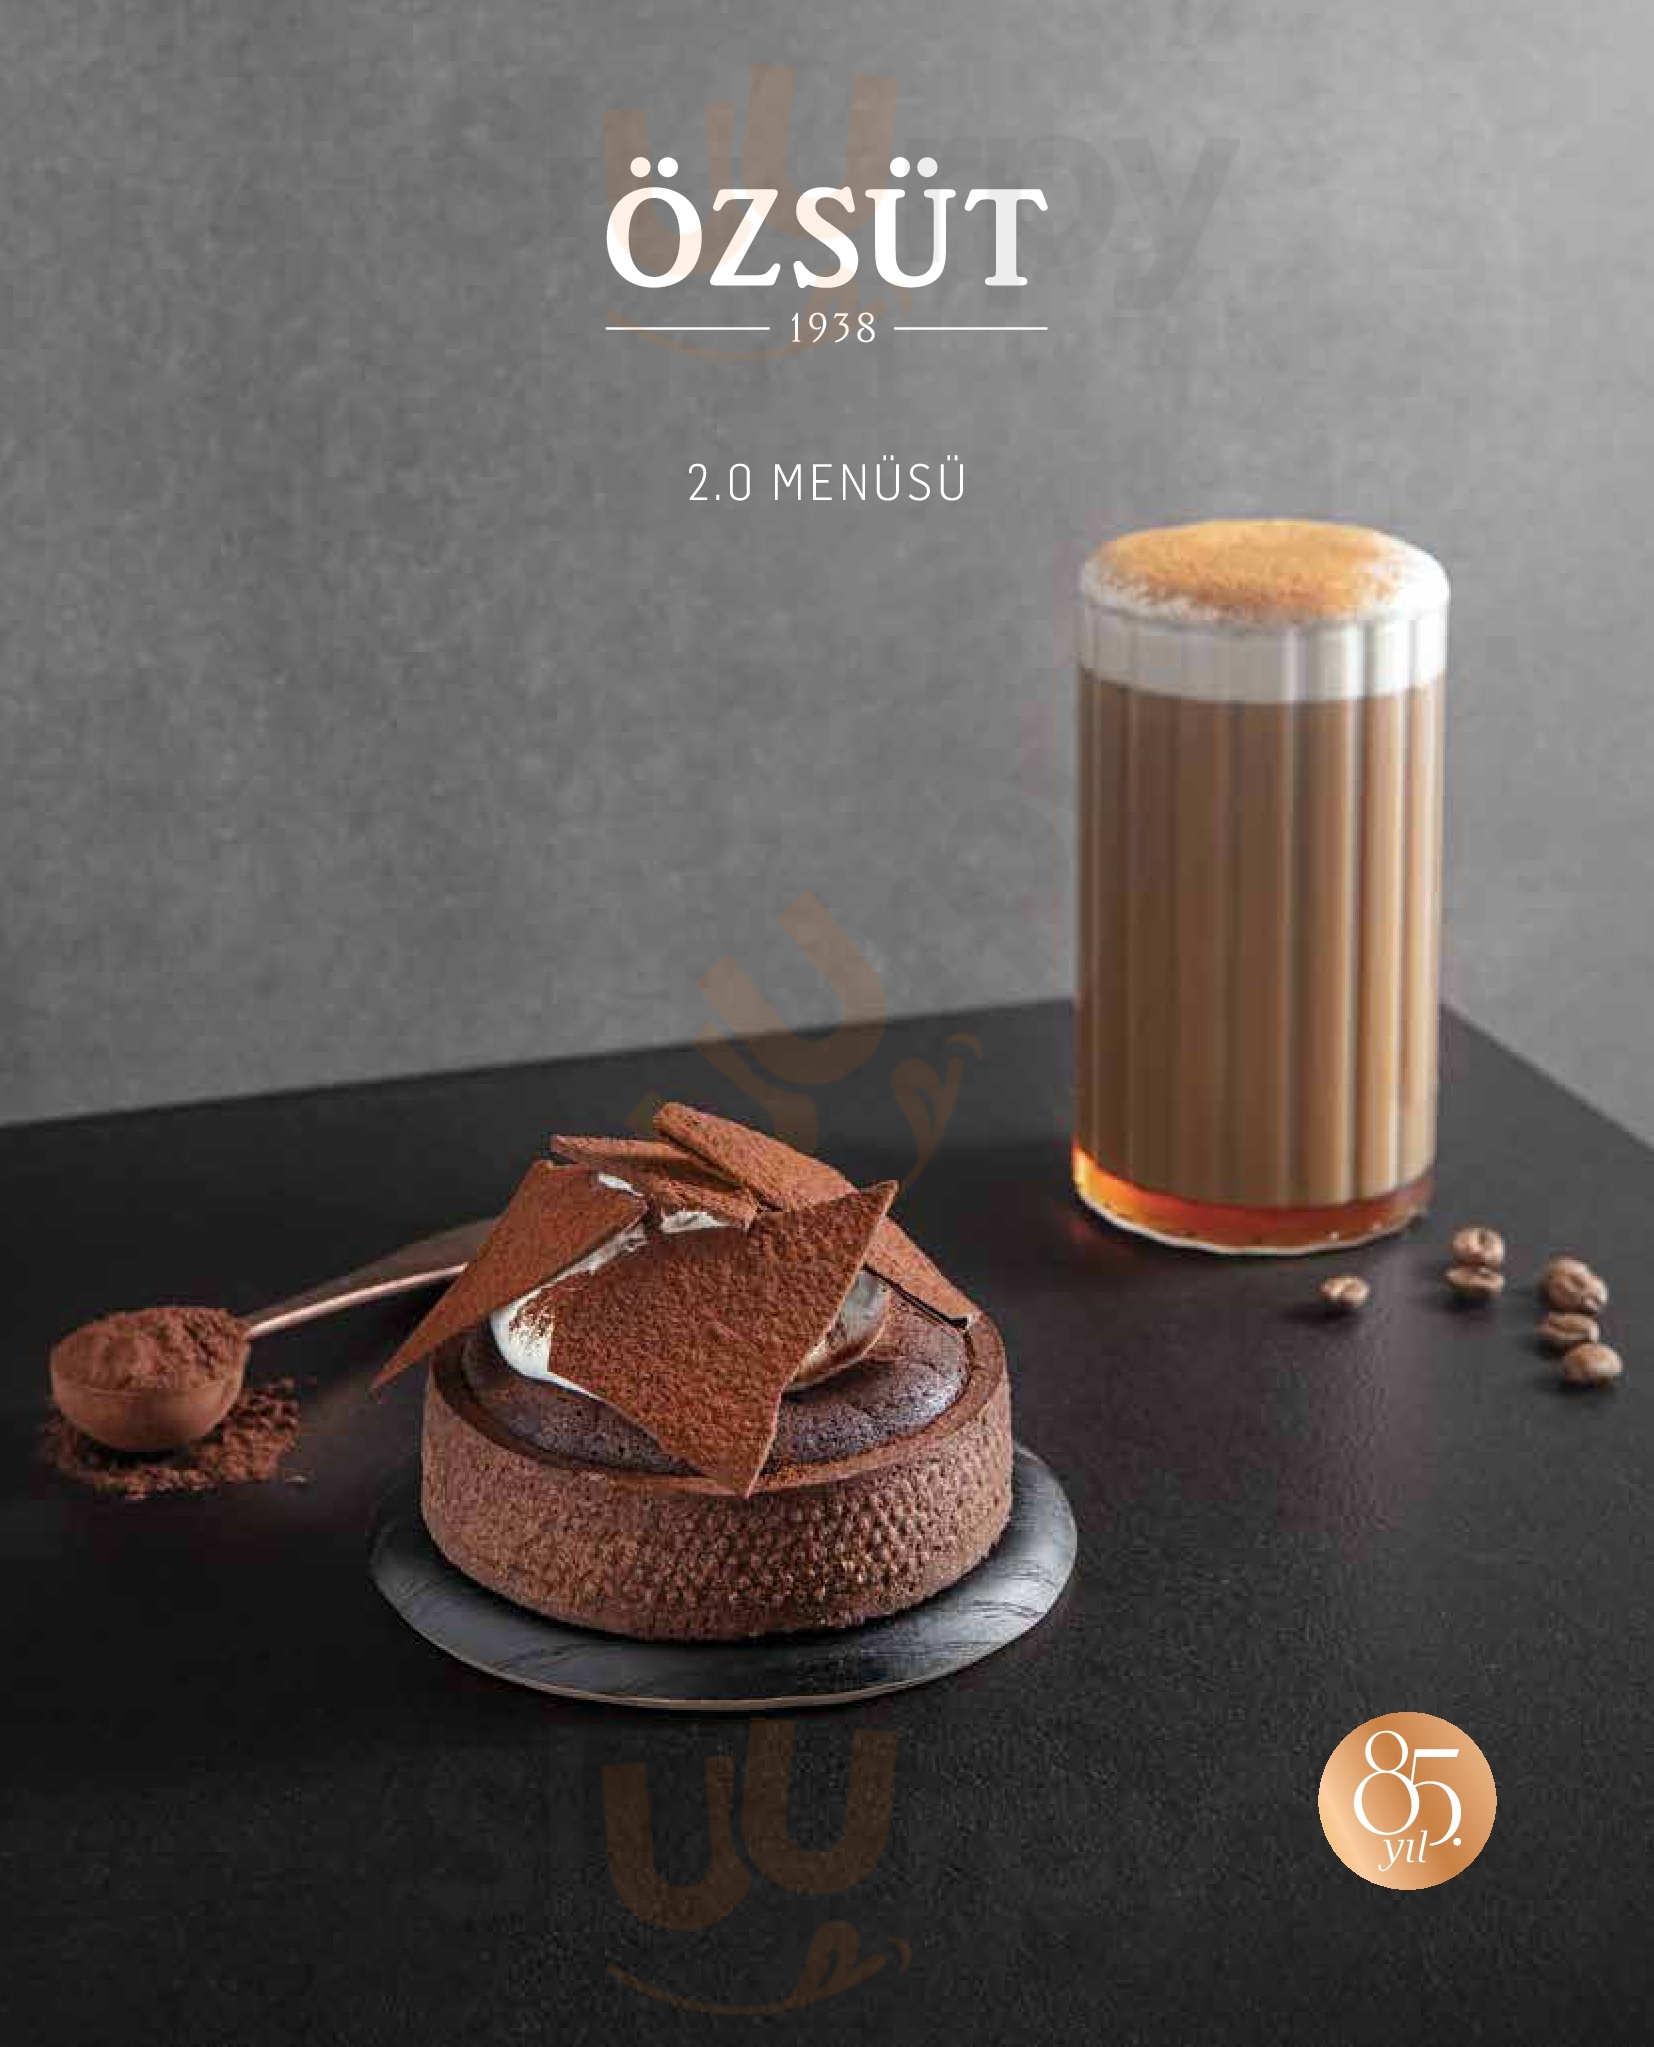 Ozsut Cafe İstanbul Menu - 1